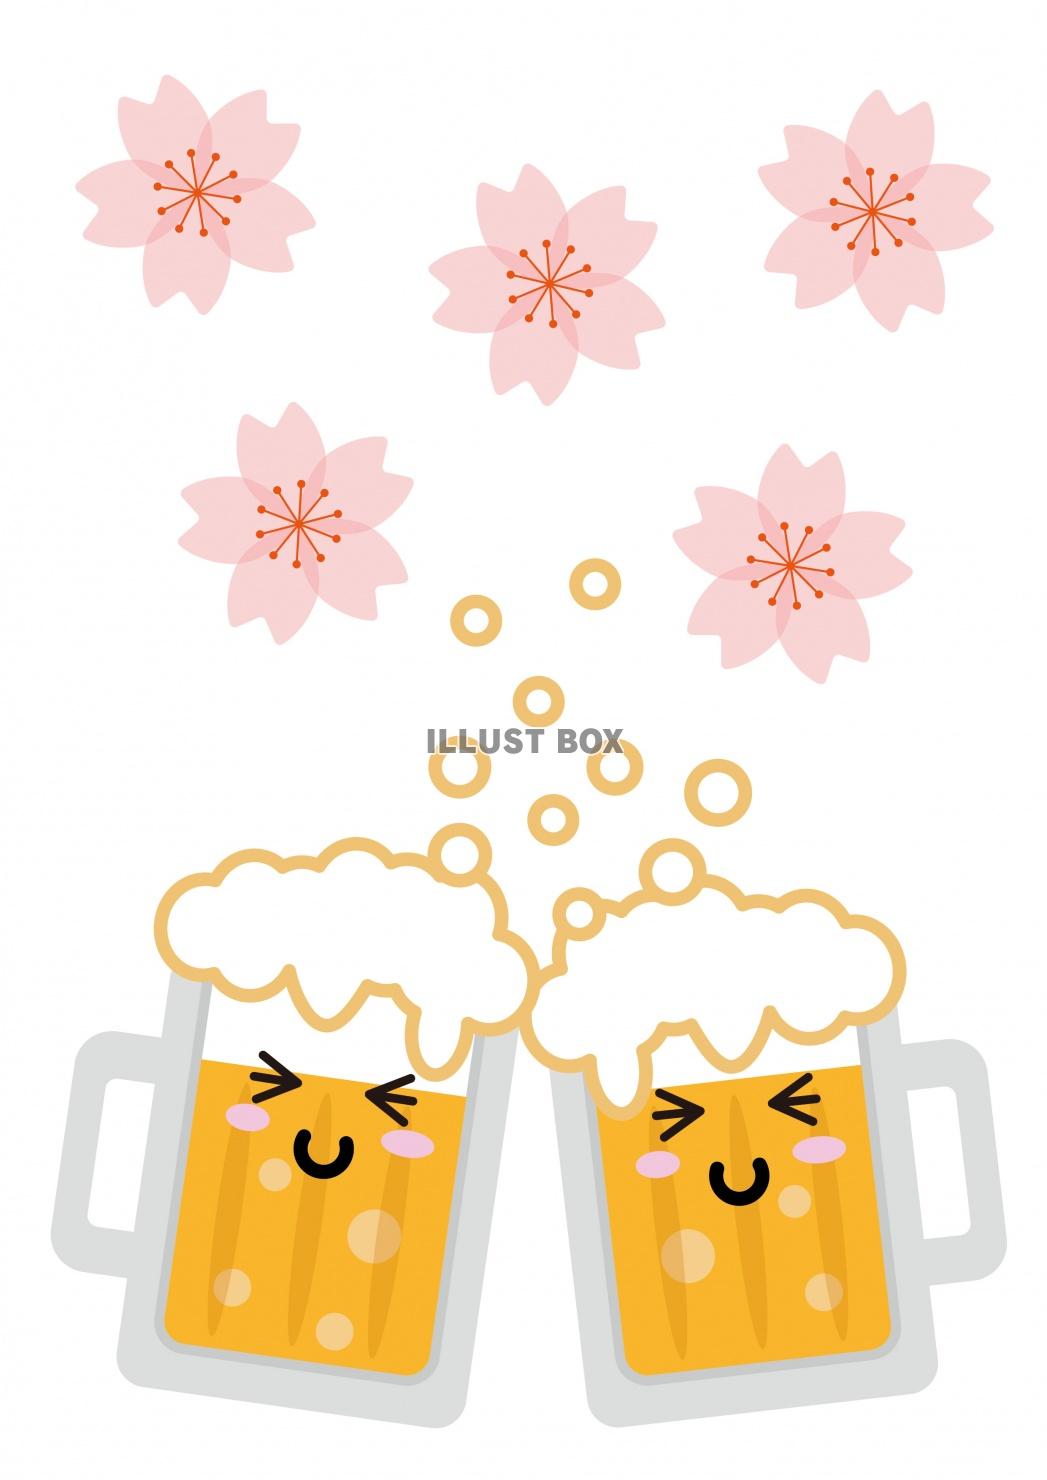 無料イラスト 桜の下のかわいい顔が描いてあるビールのイラスト